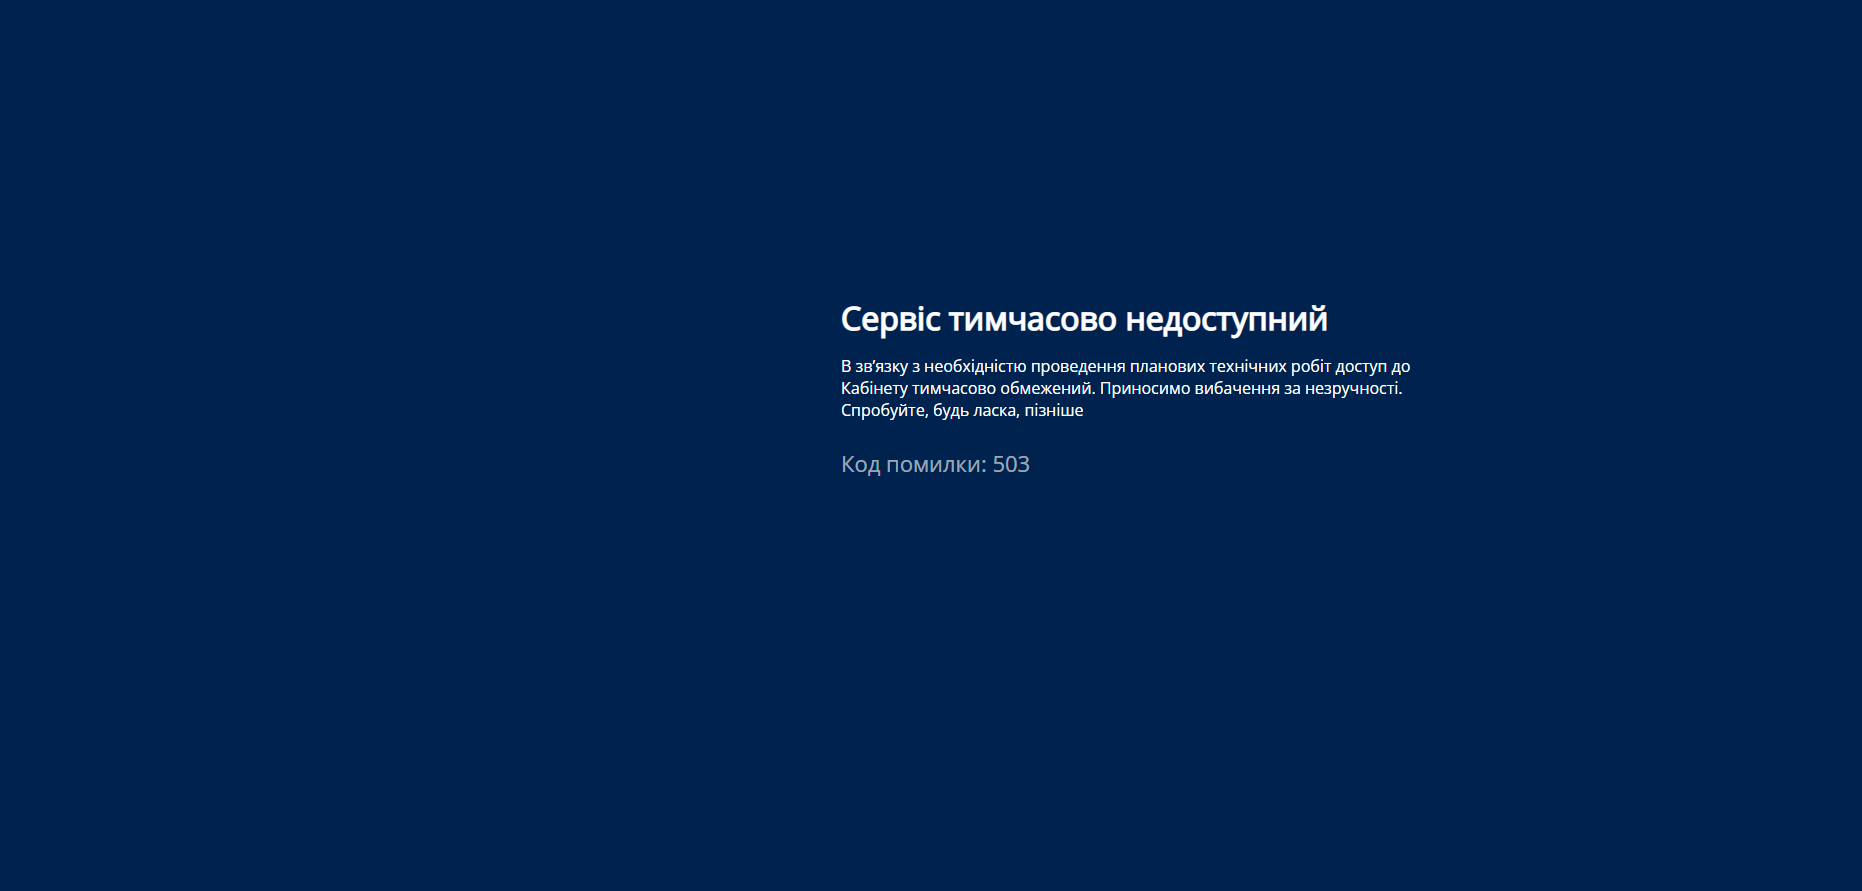 Хакери зламали низку сайтів держструктур України: що відбувається